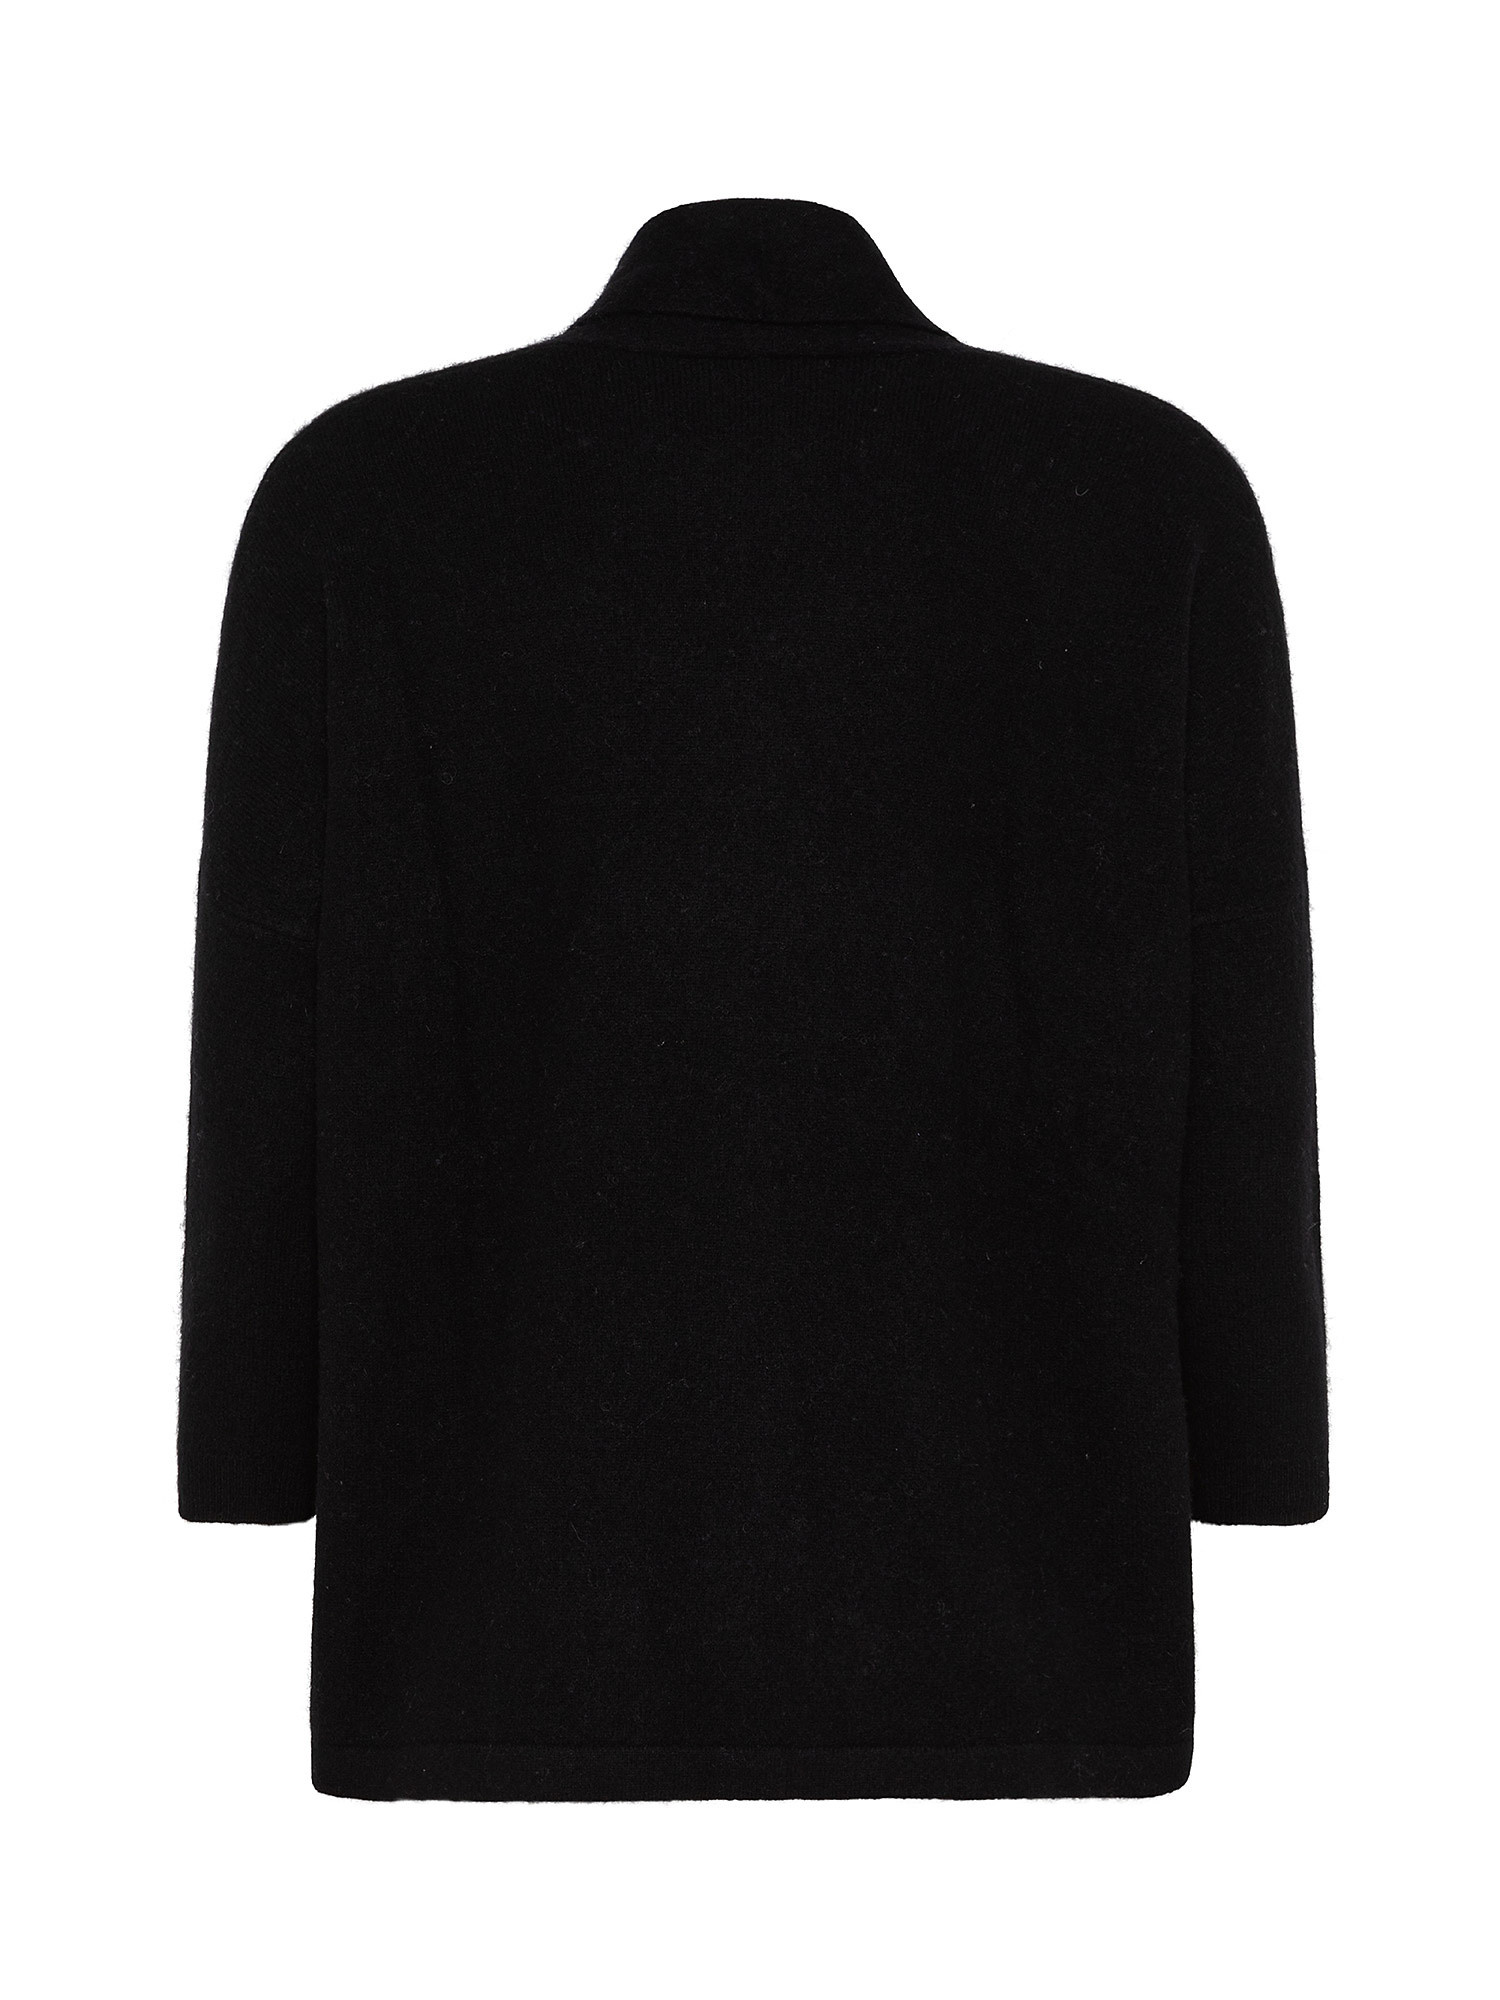 Cashmere cardigan, Black, large image number 1